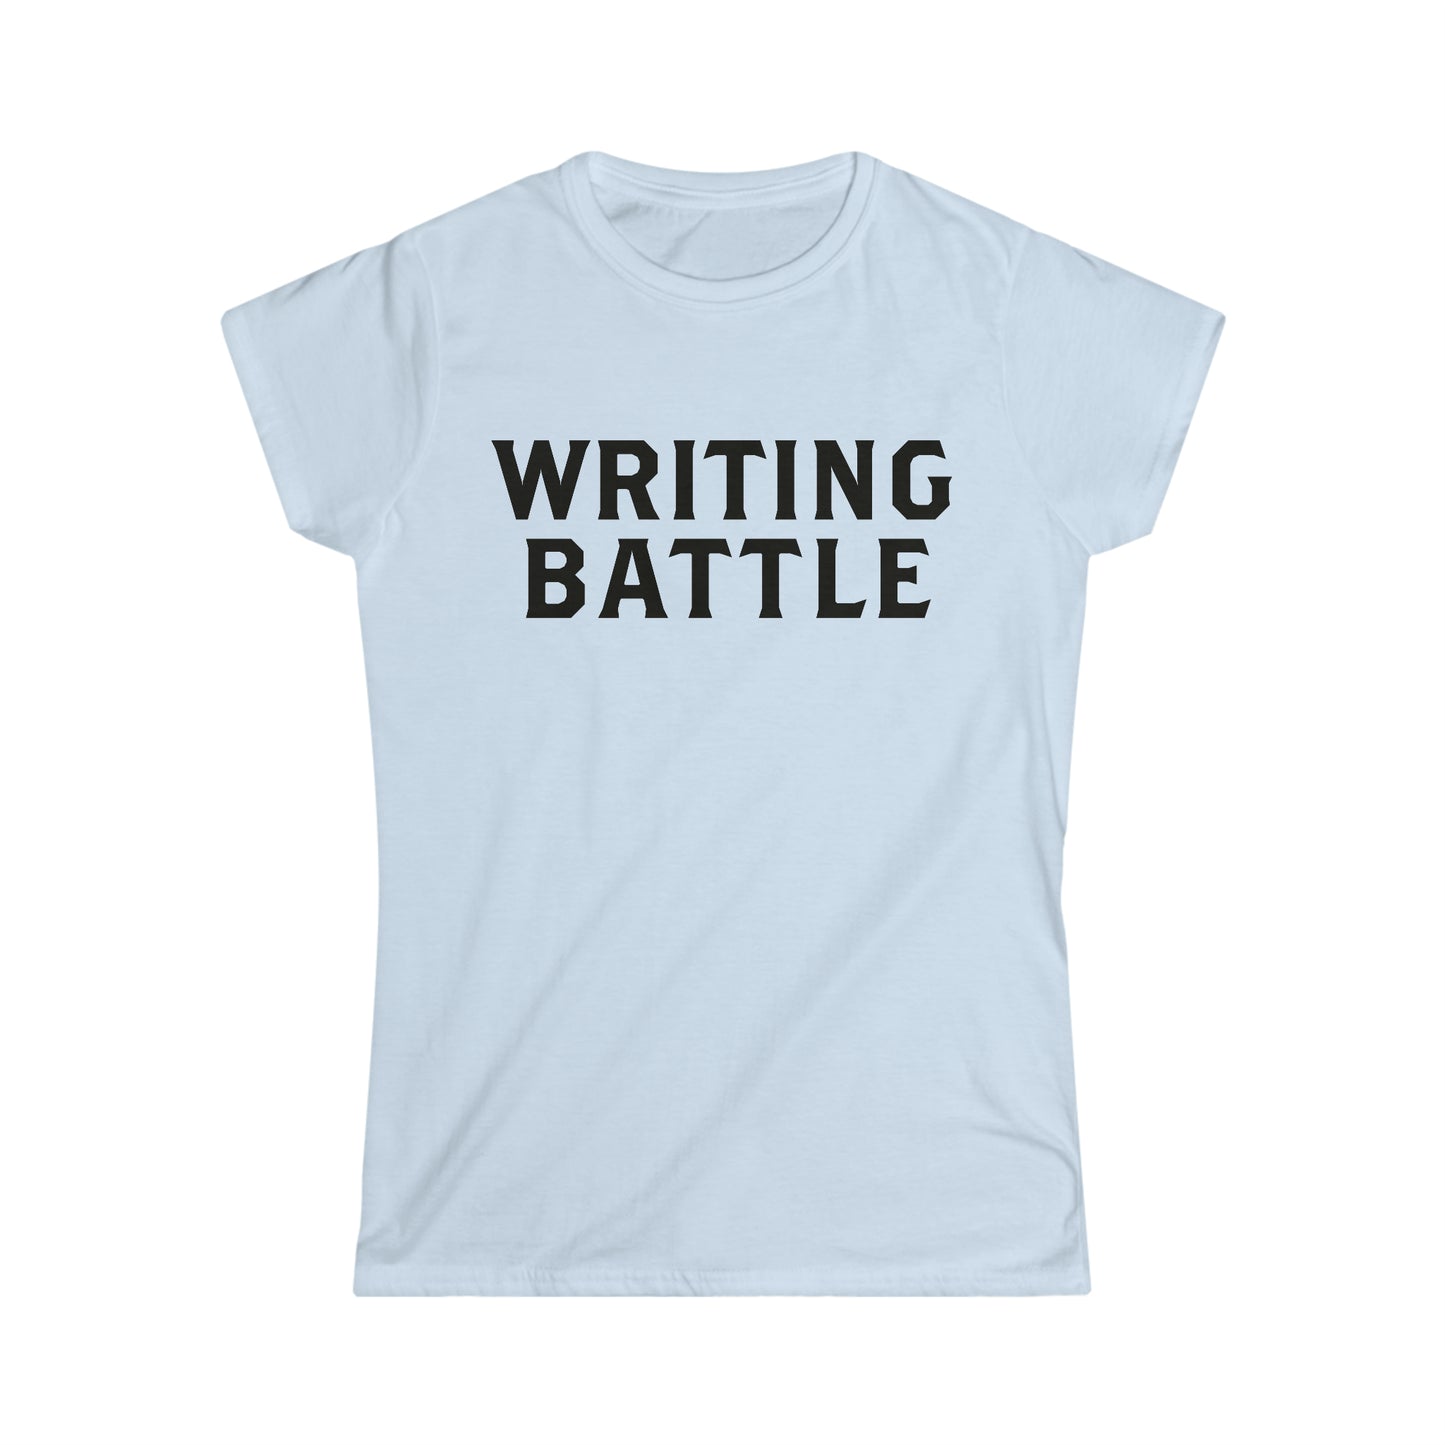 Women's Softstyle Writing Battle Tee - USA